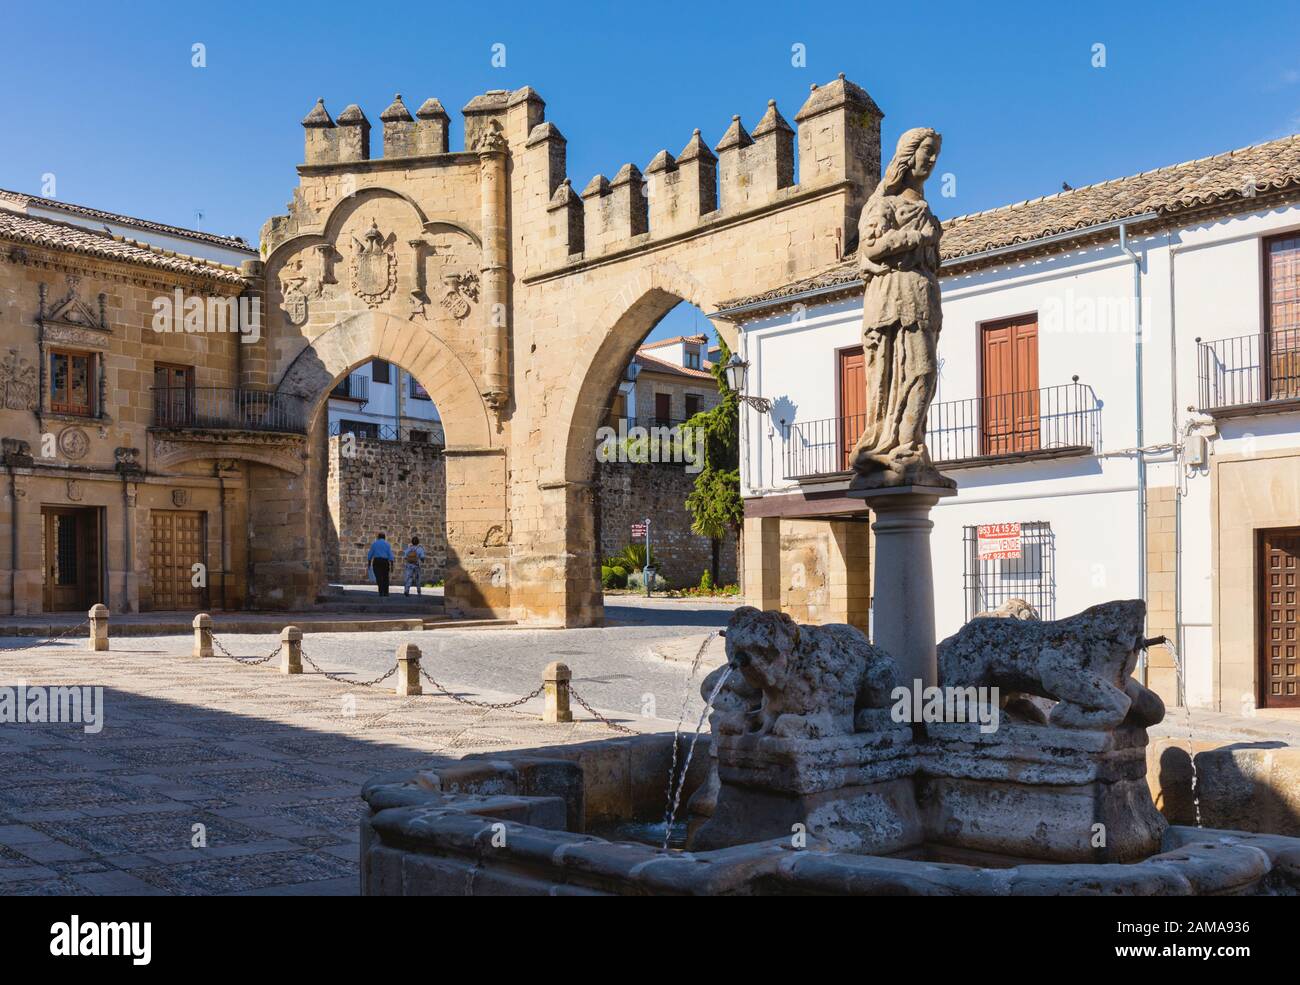 Fuente de los Leones, oder Brunnen des Löwen, in der Plaza del Populo, Baeza, Provinz Jaen, Andalusien, Spanien. Die ornamentale City Gate in der Rückseite Stockfoto